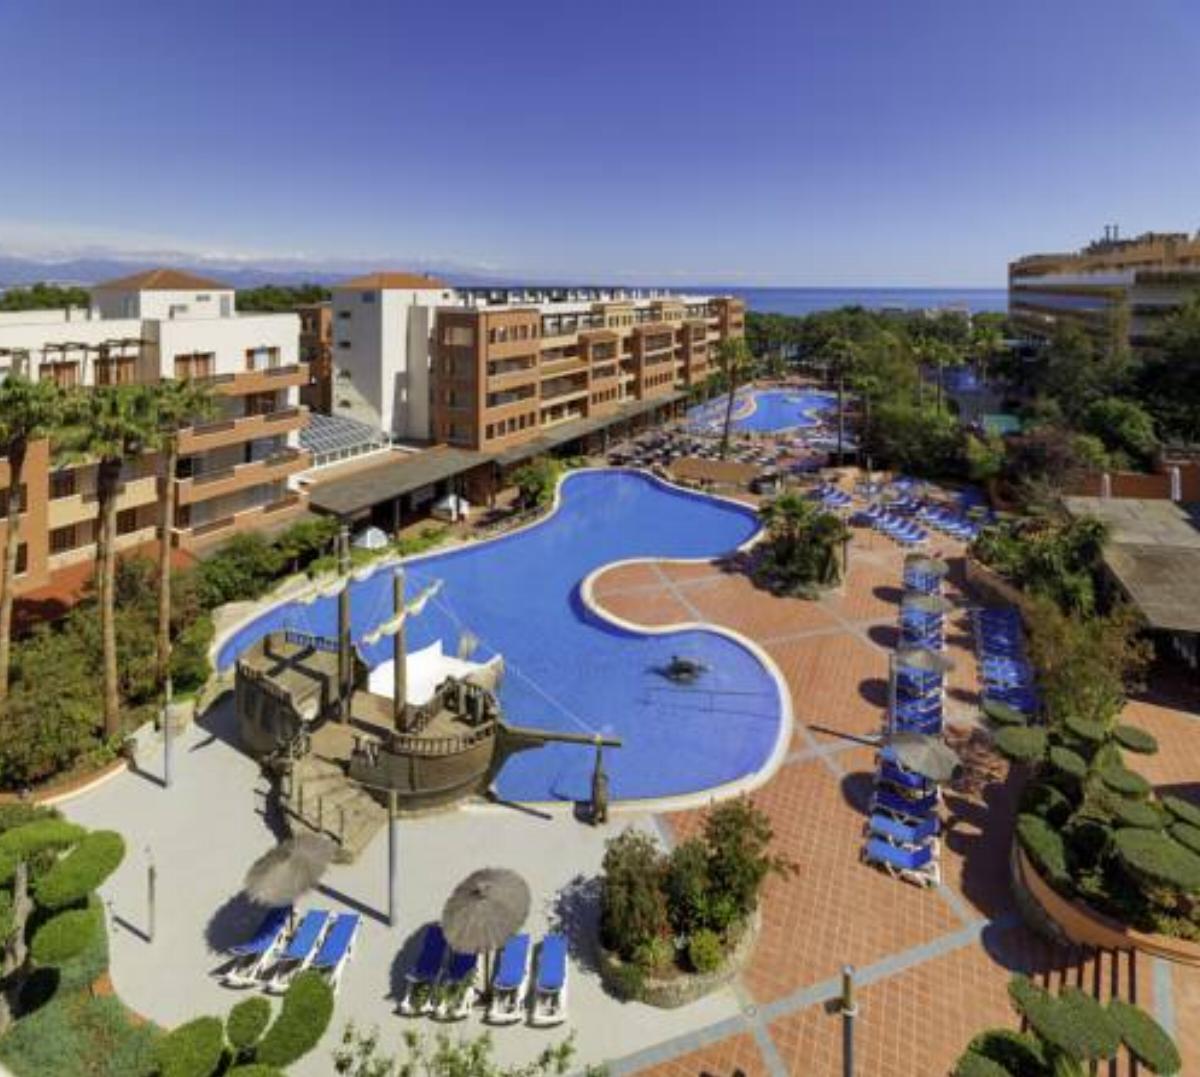 H10 Mediterranean Village Hotel Salou Spain